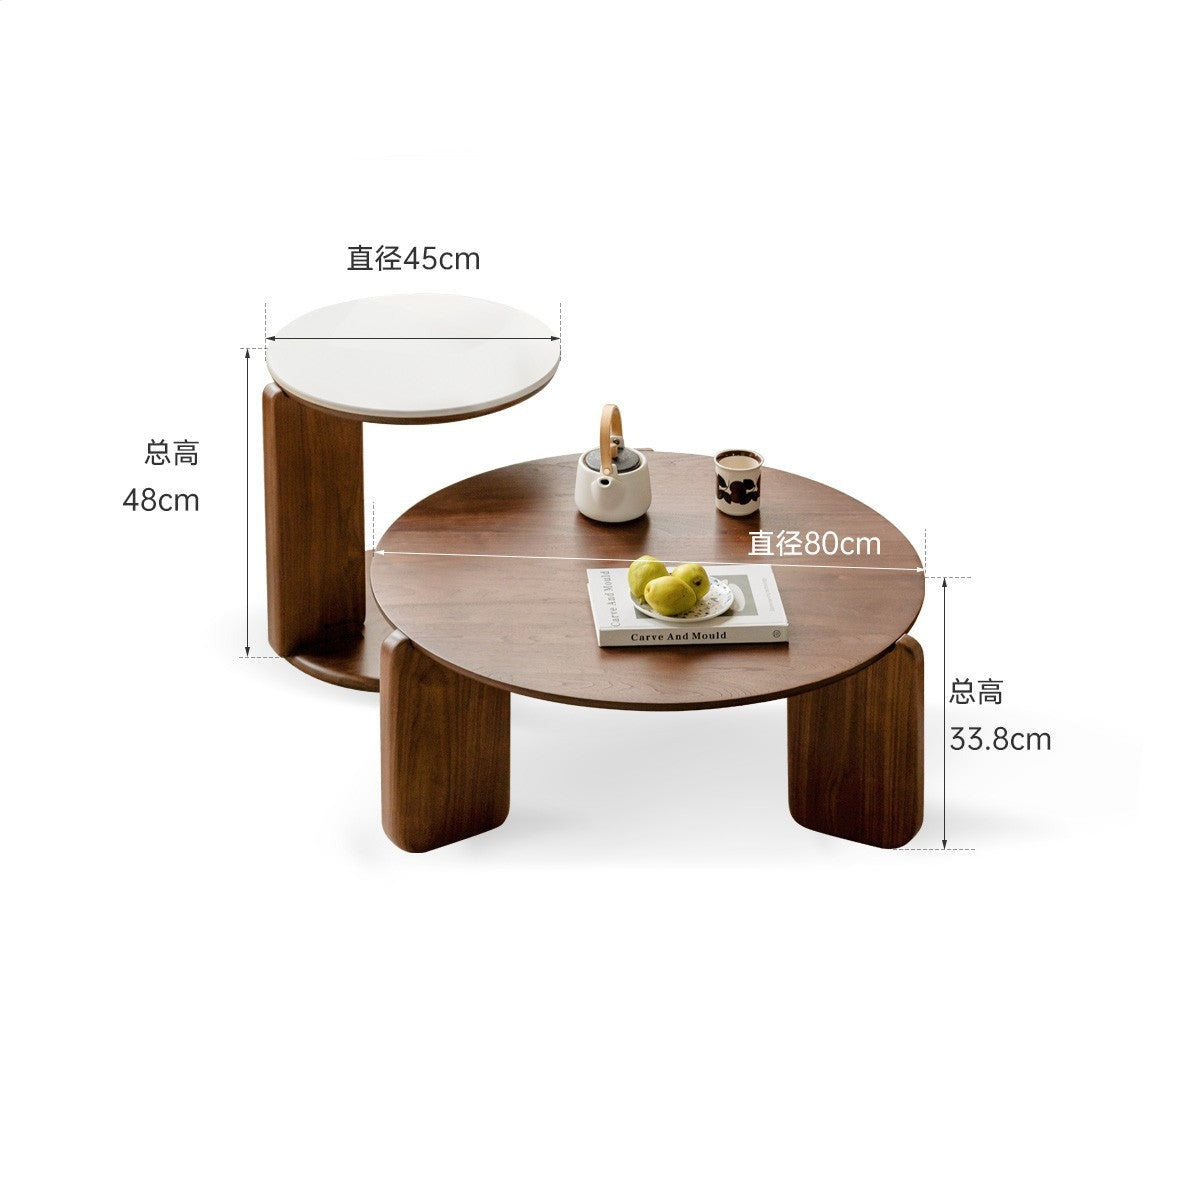 Black walnut solid wood slate round tea coffee table "